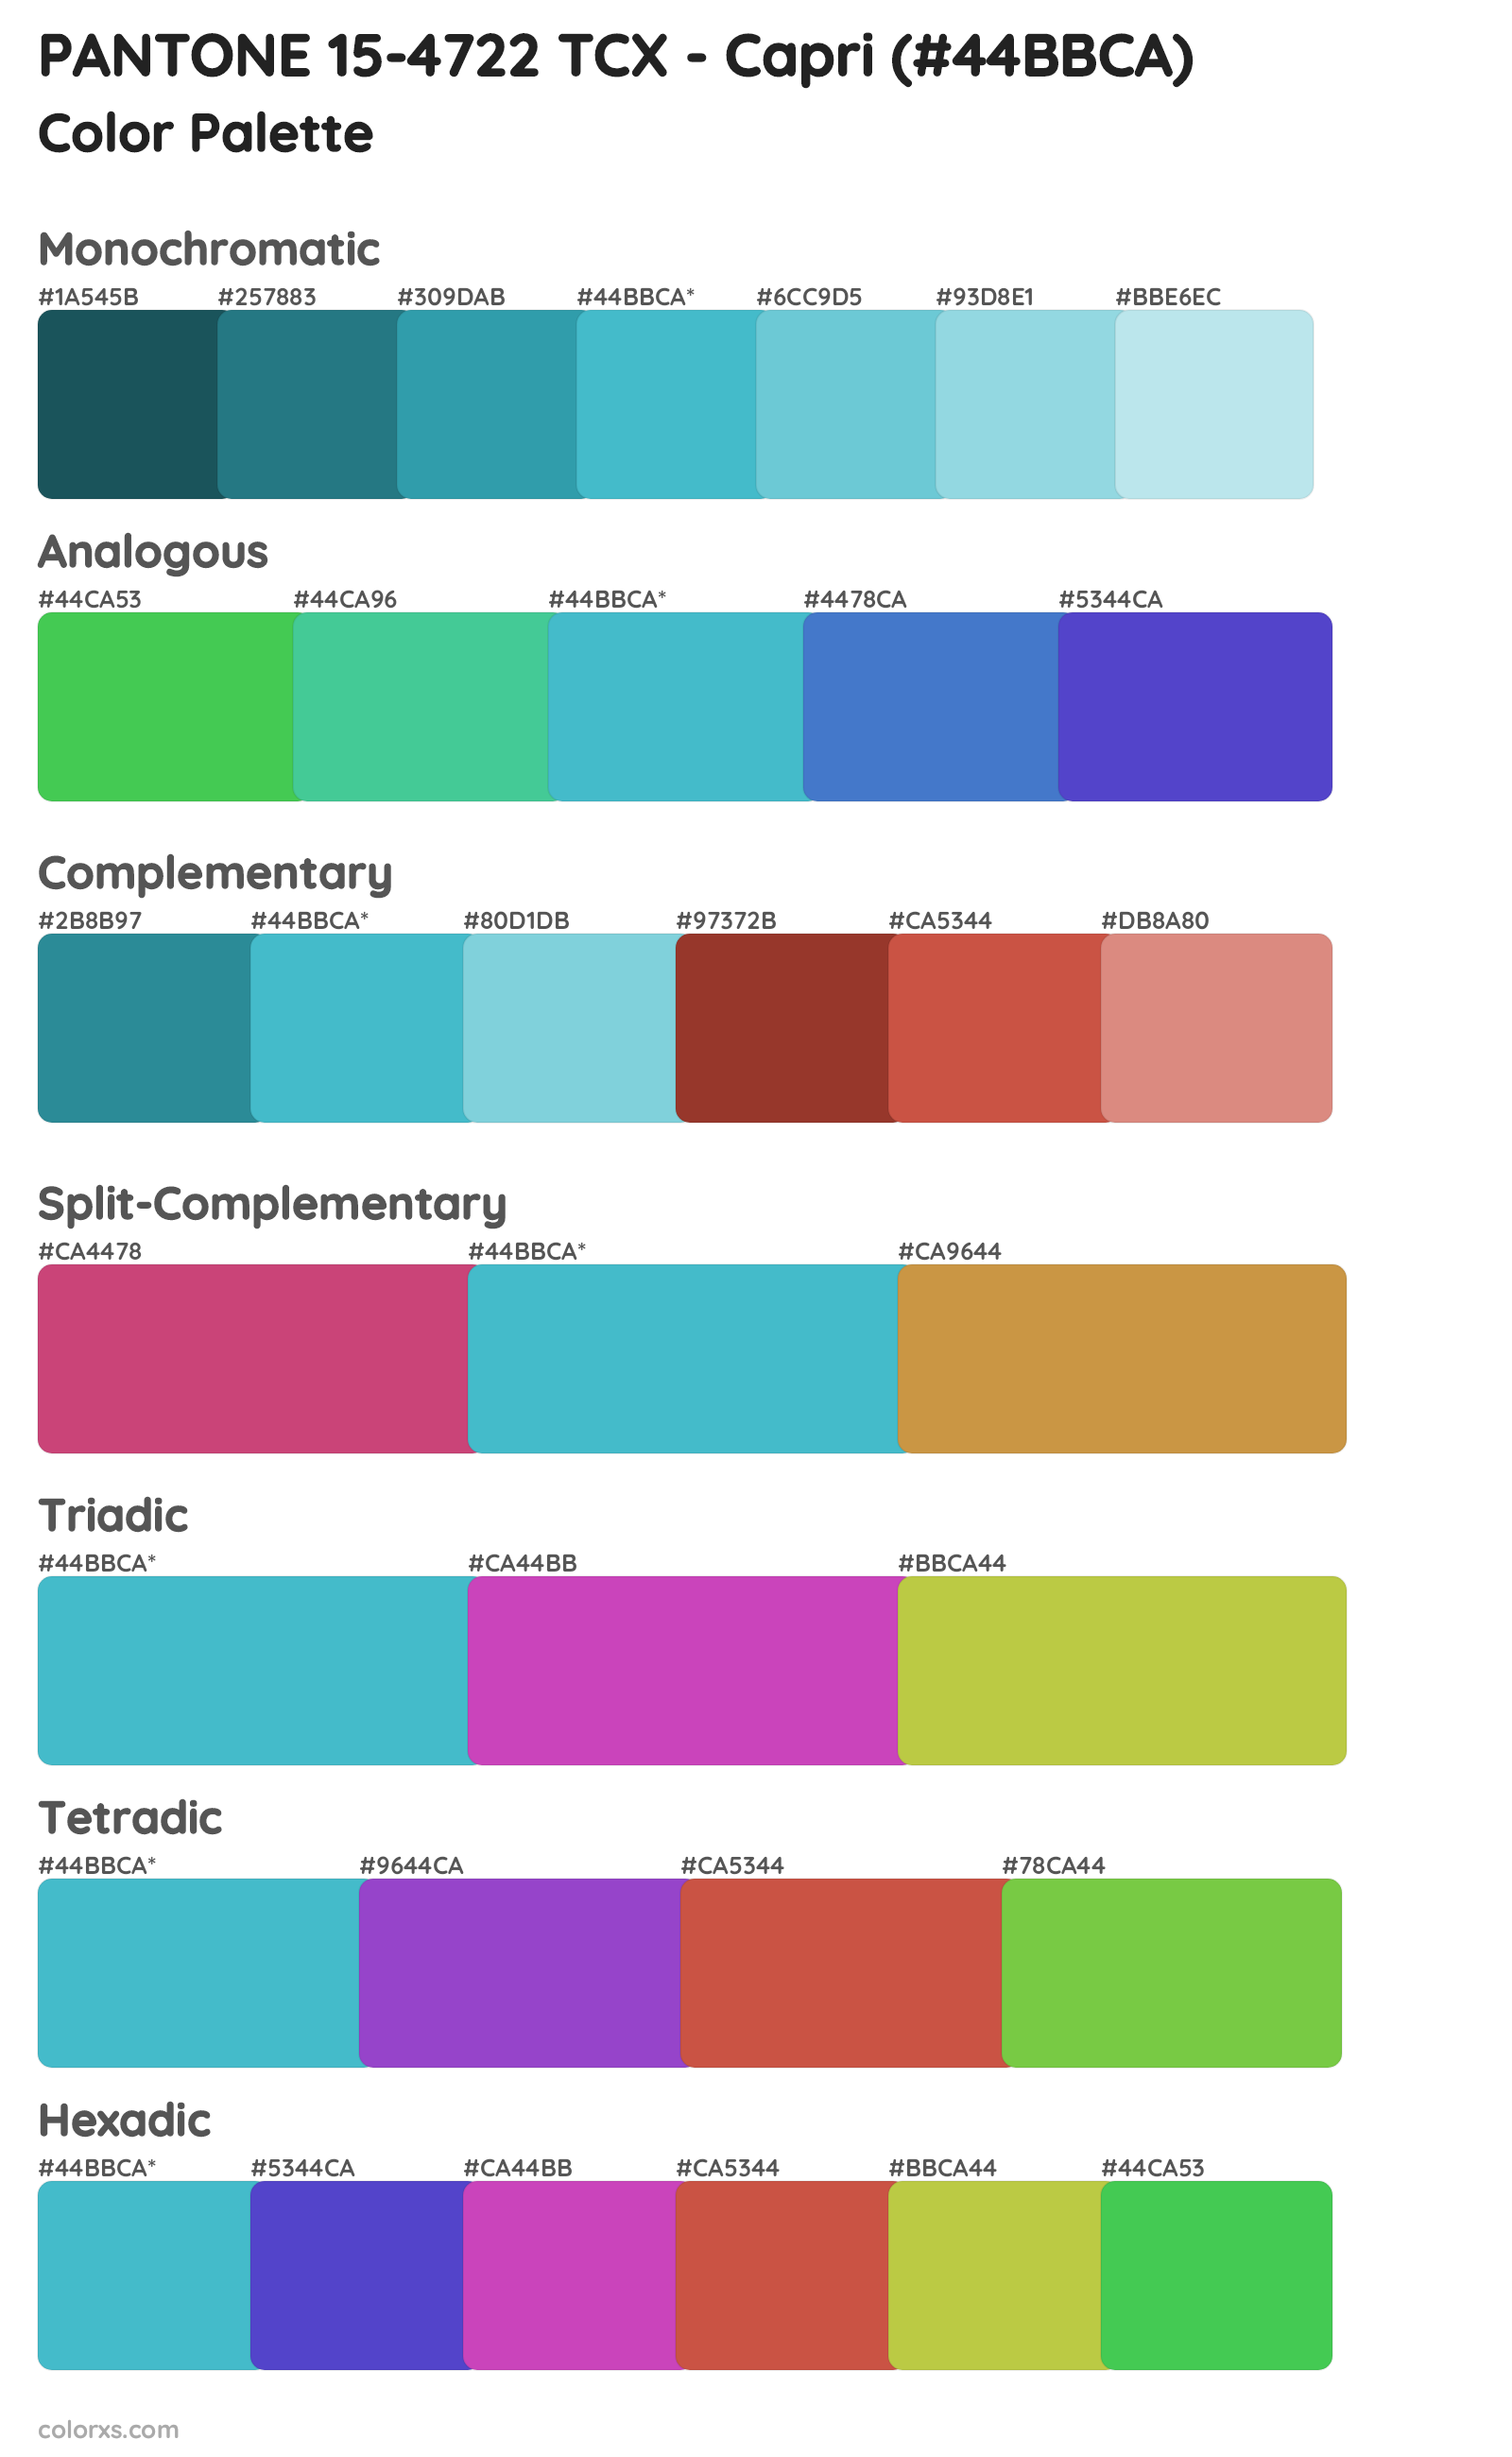 PANTONE 15-4722 TCX - Capri Color Scheme Palettes